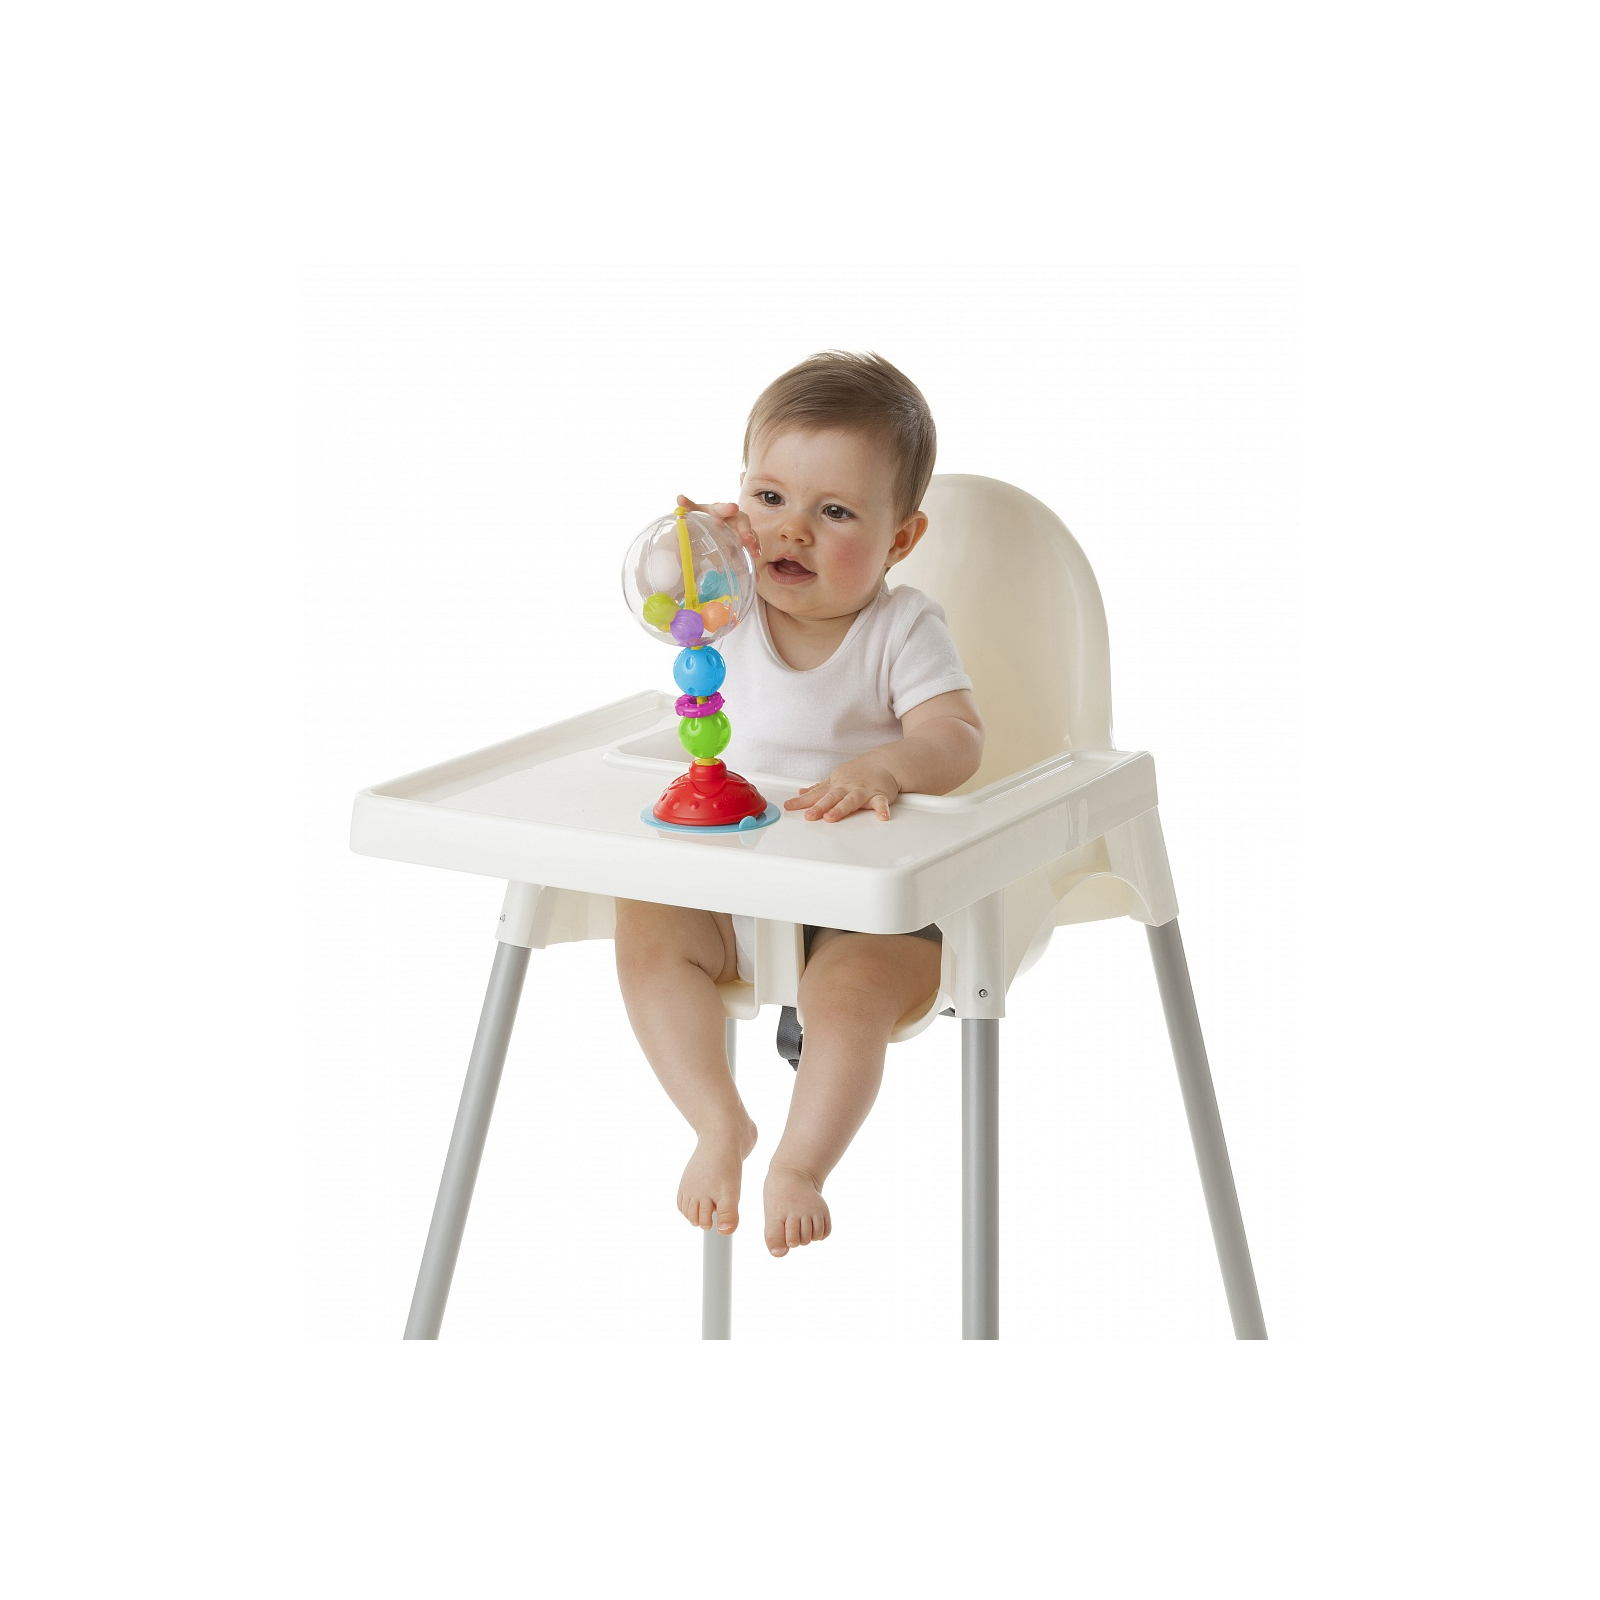 Развивающая игрушка Playgro Шарики для стульчика (25241) изображение 3